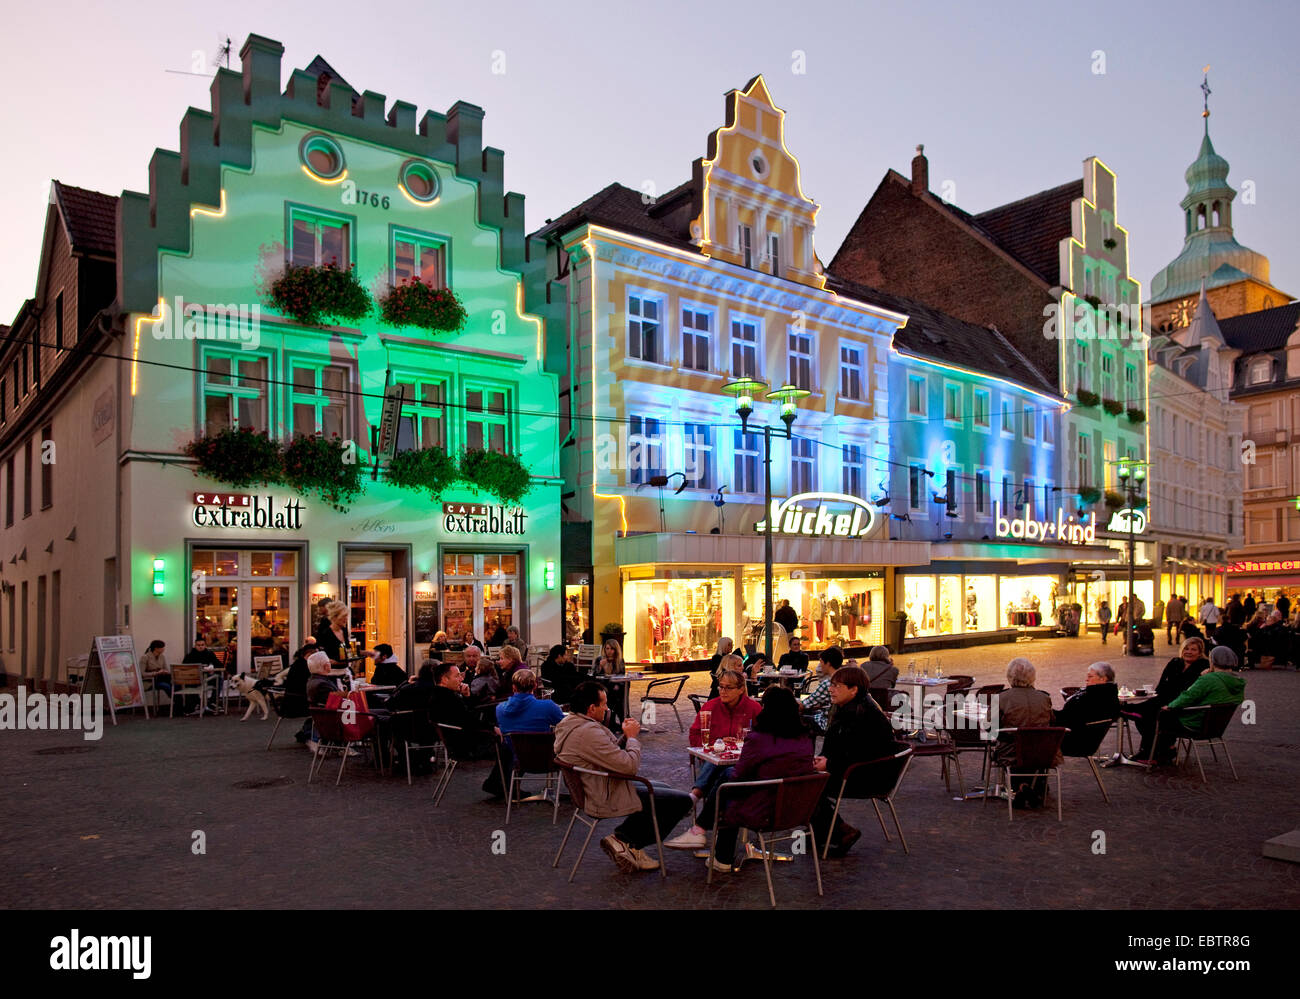 beleuchtete Fassaden in der Altstadt, Recklinghausen, Ruhrgebiet, Nordrhein-Westfalen, Deutschland Stockfoto